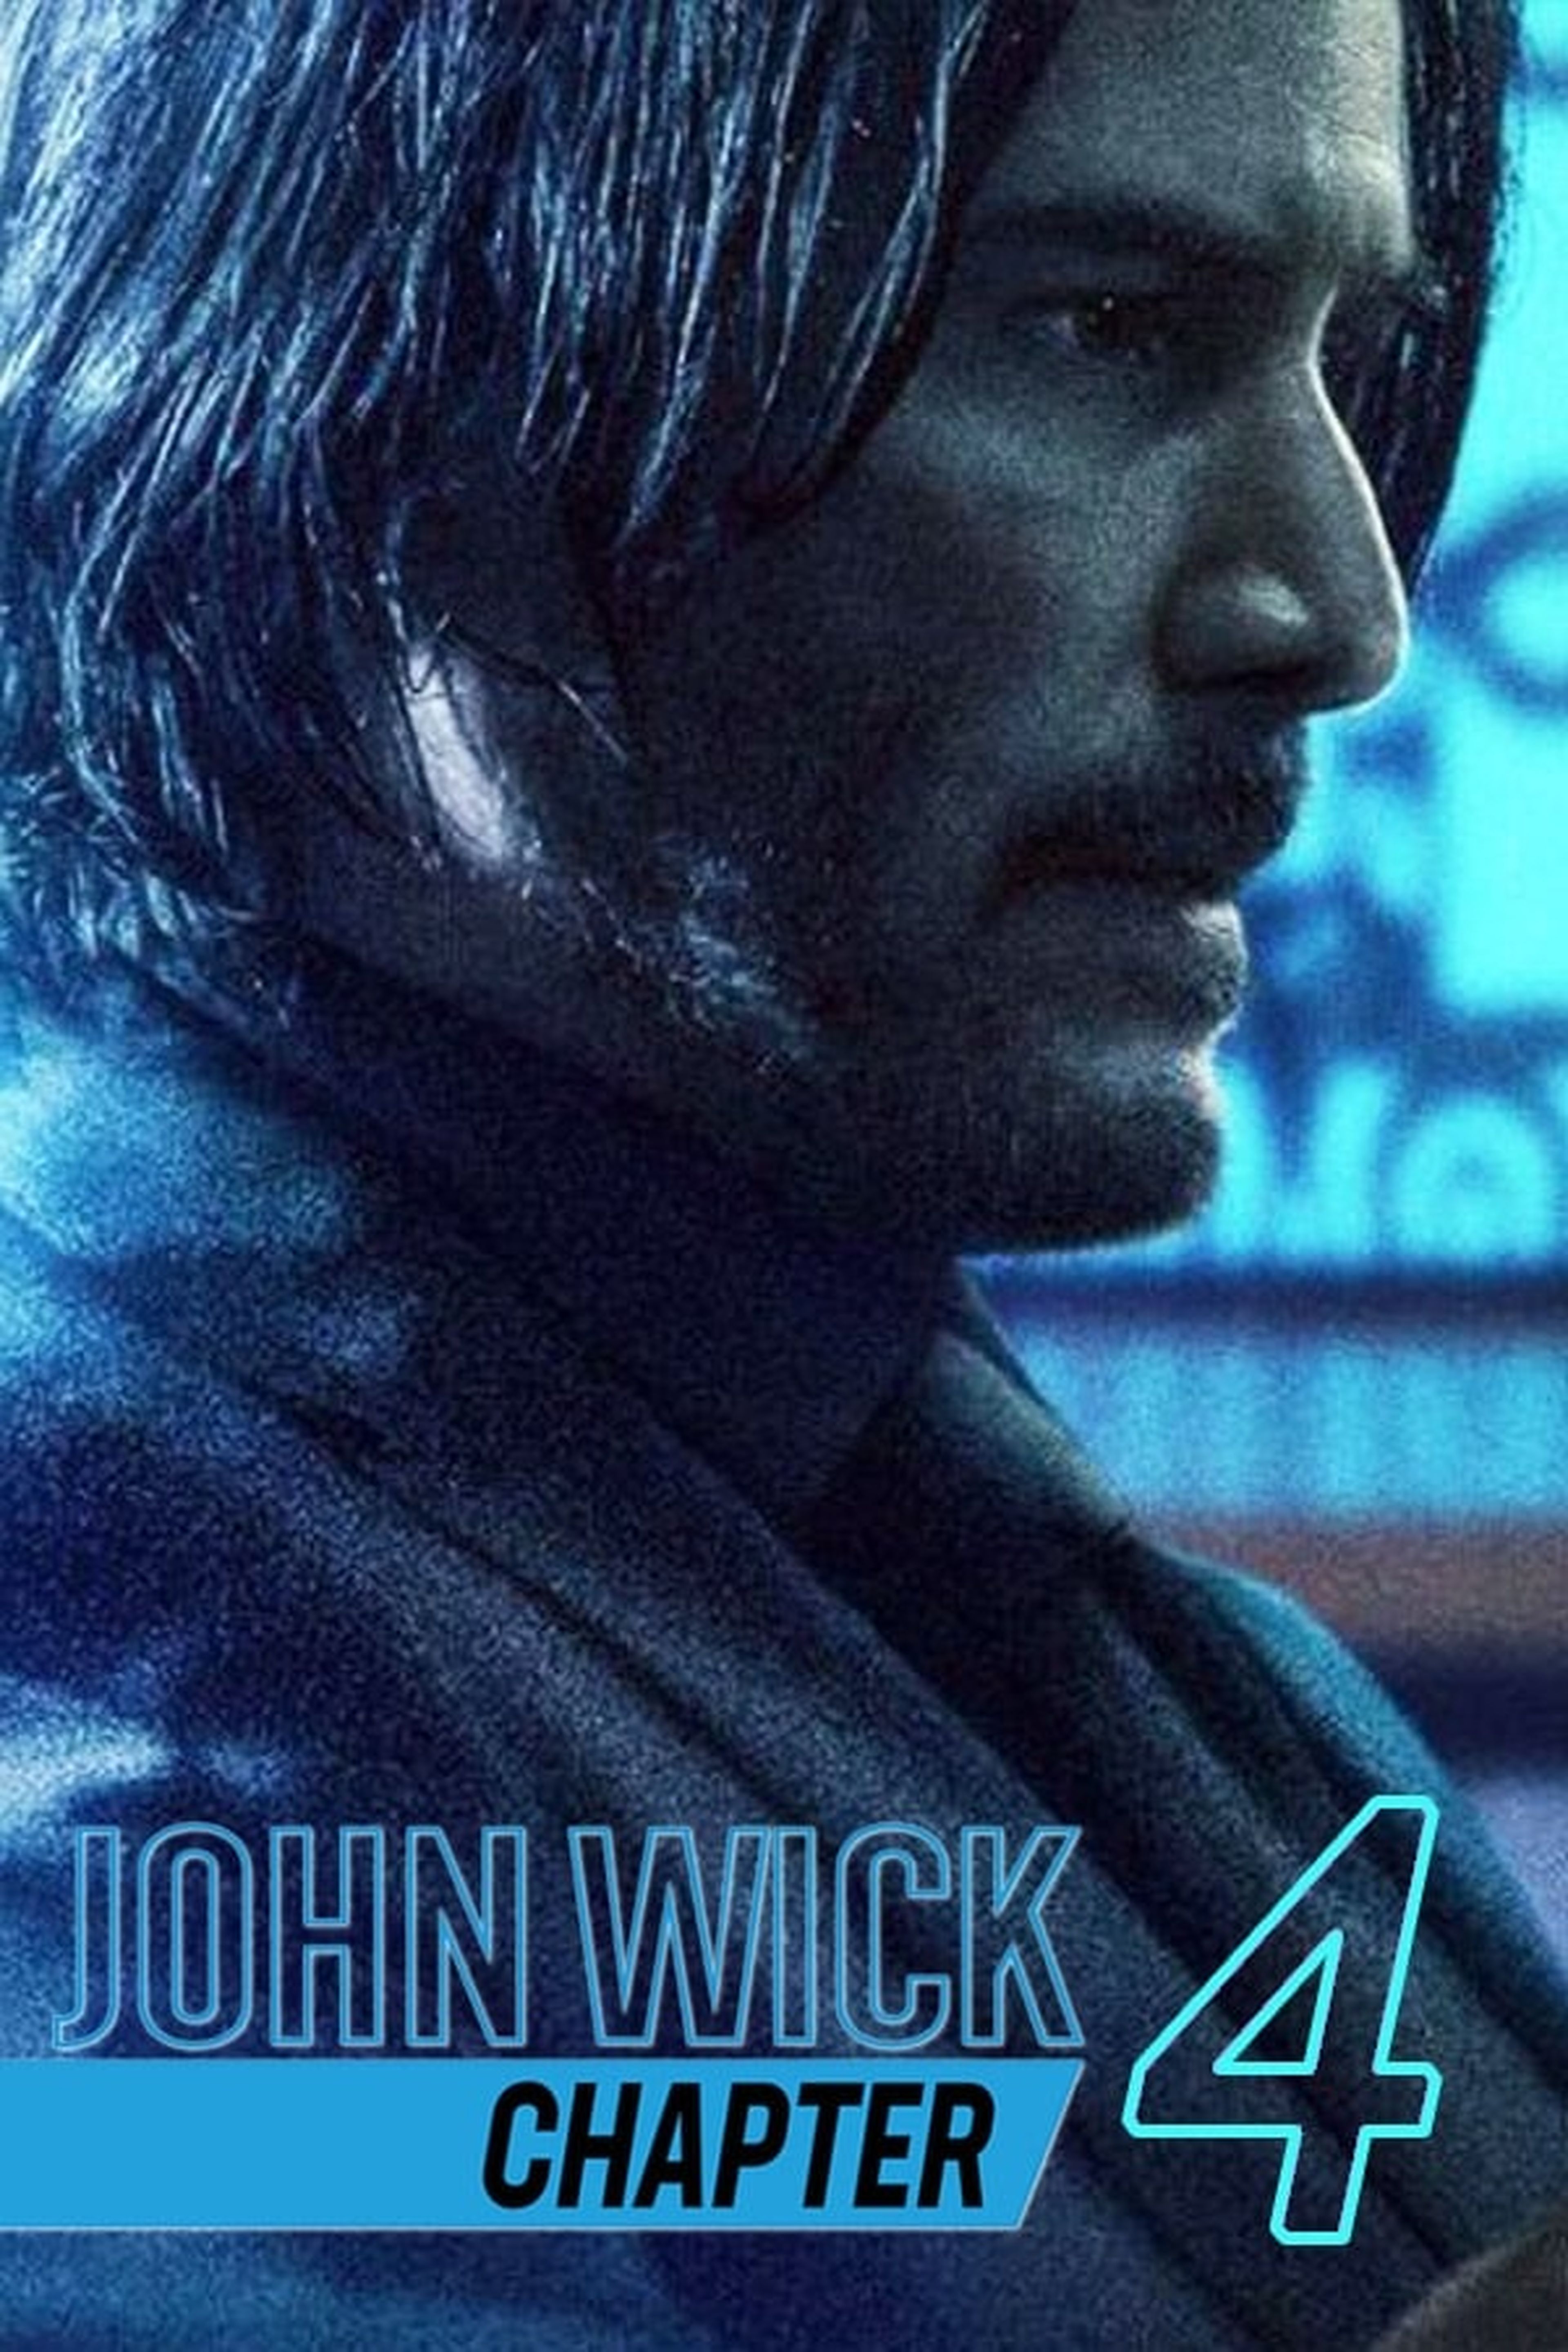 John Wick regresara a la pantalla con una quinta película - Grupo Milenio